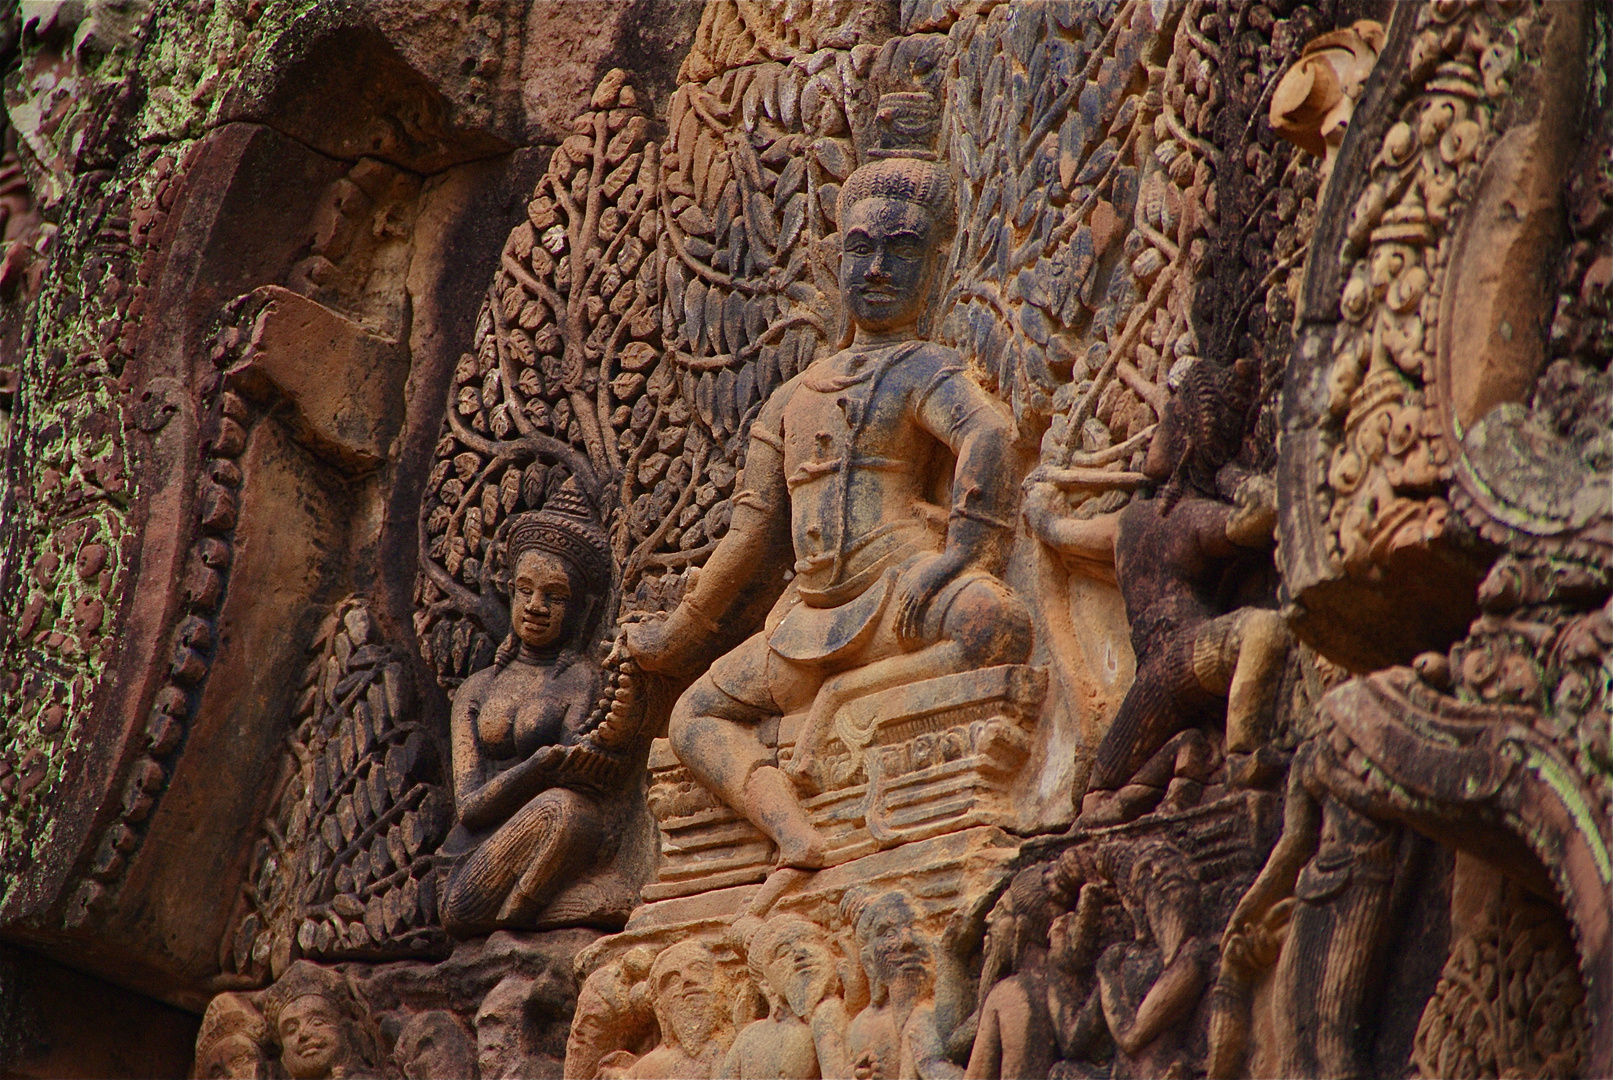 bantea srey, detail VII, cambodia 2010